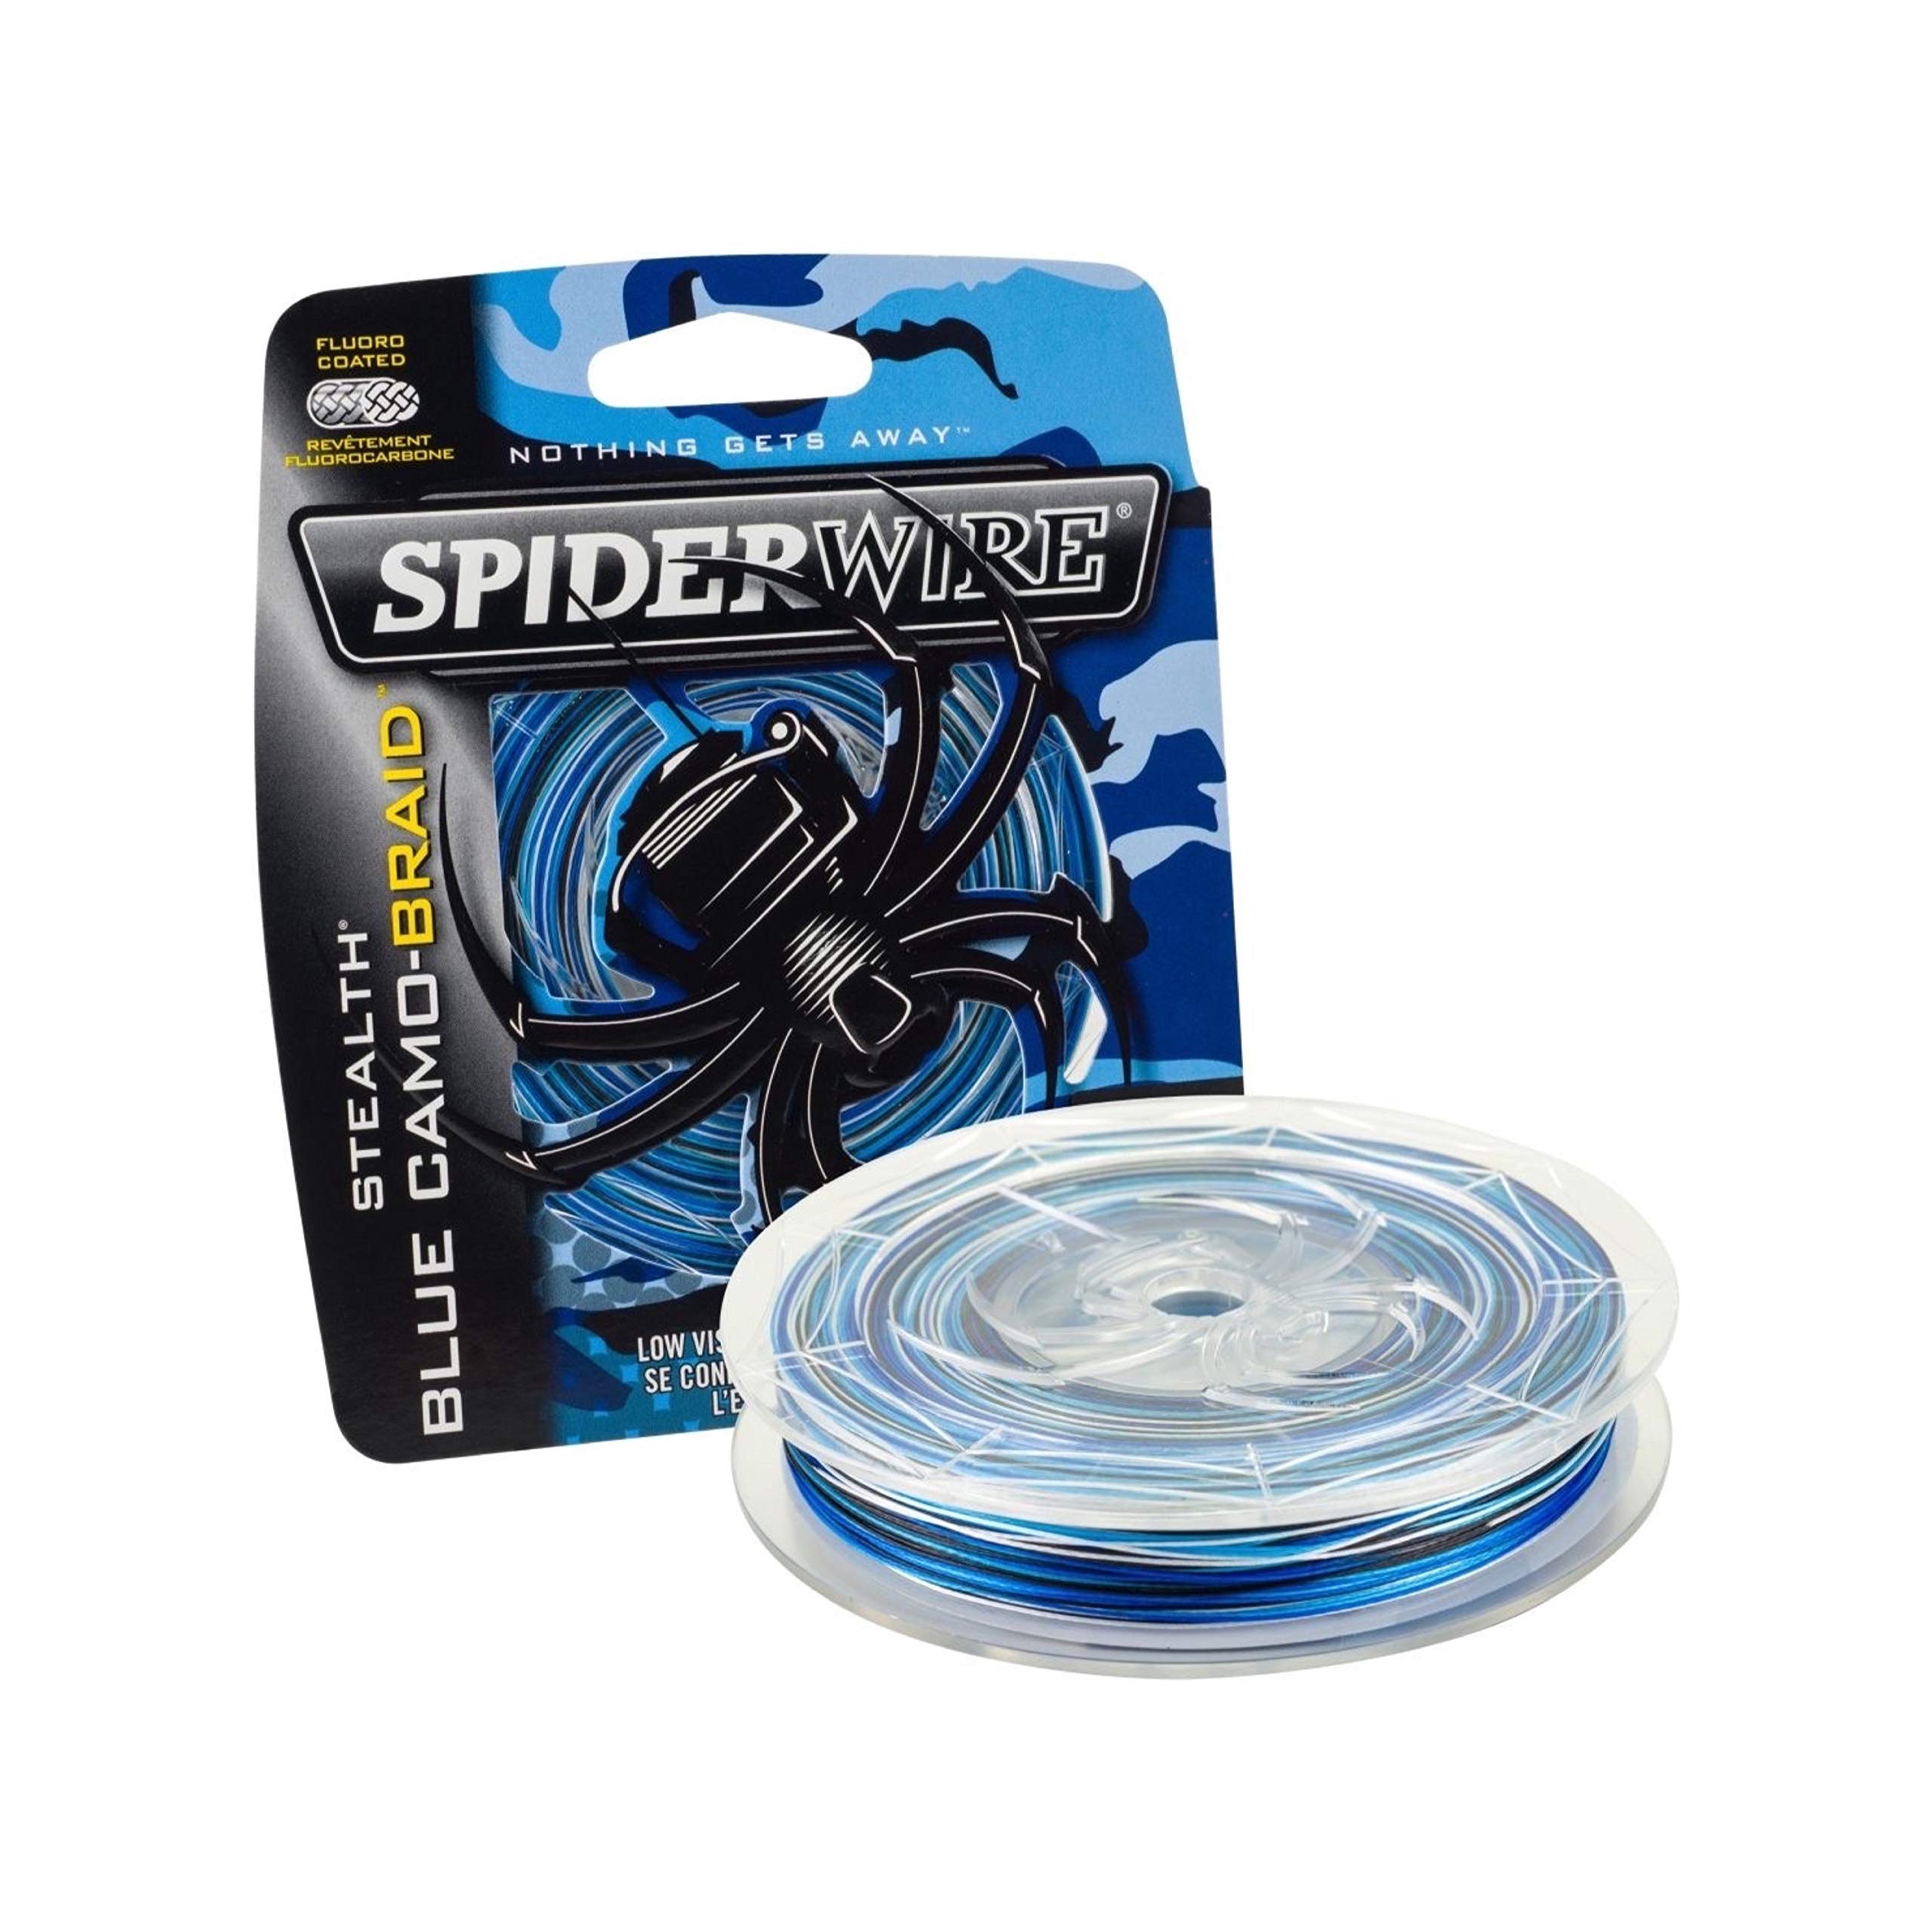 Spiderwire स्टील्थ ब्रैड फिशिंग लाइन